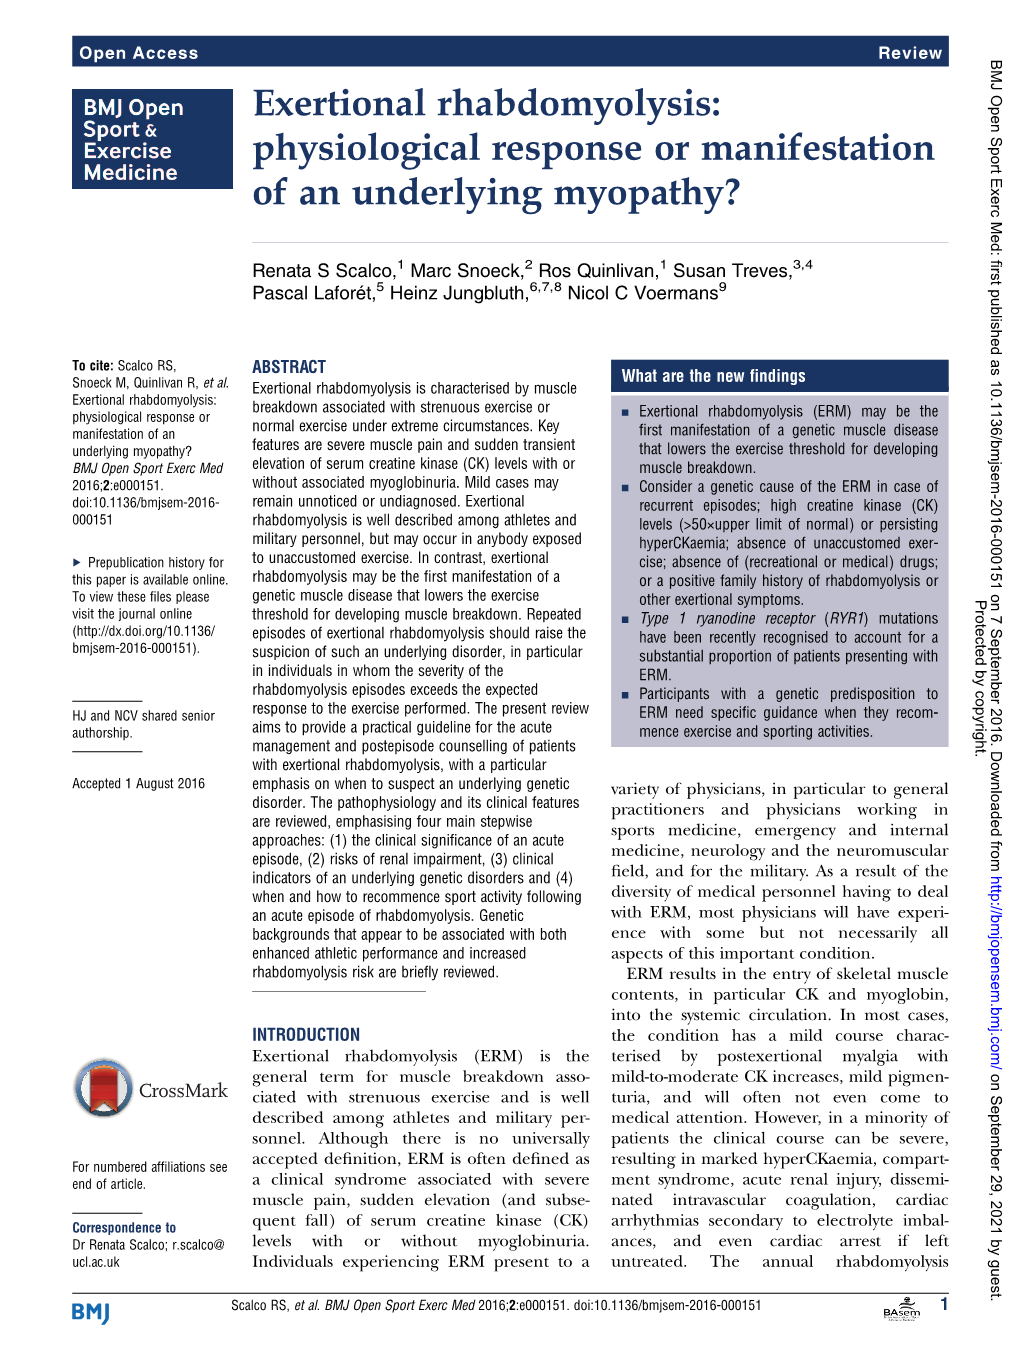 Exertional Rhabdomyolysis: Physiological Response Or Manifestation of an Underlying Myopathy?